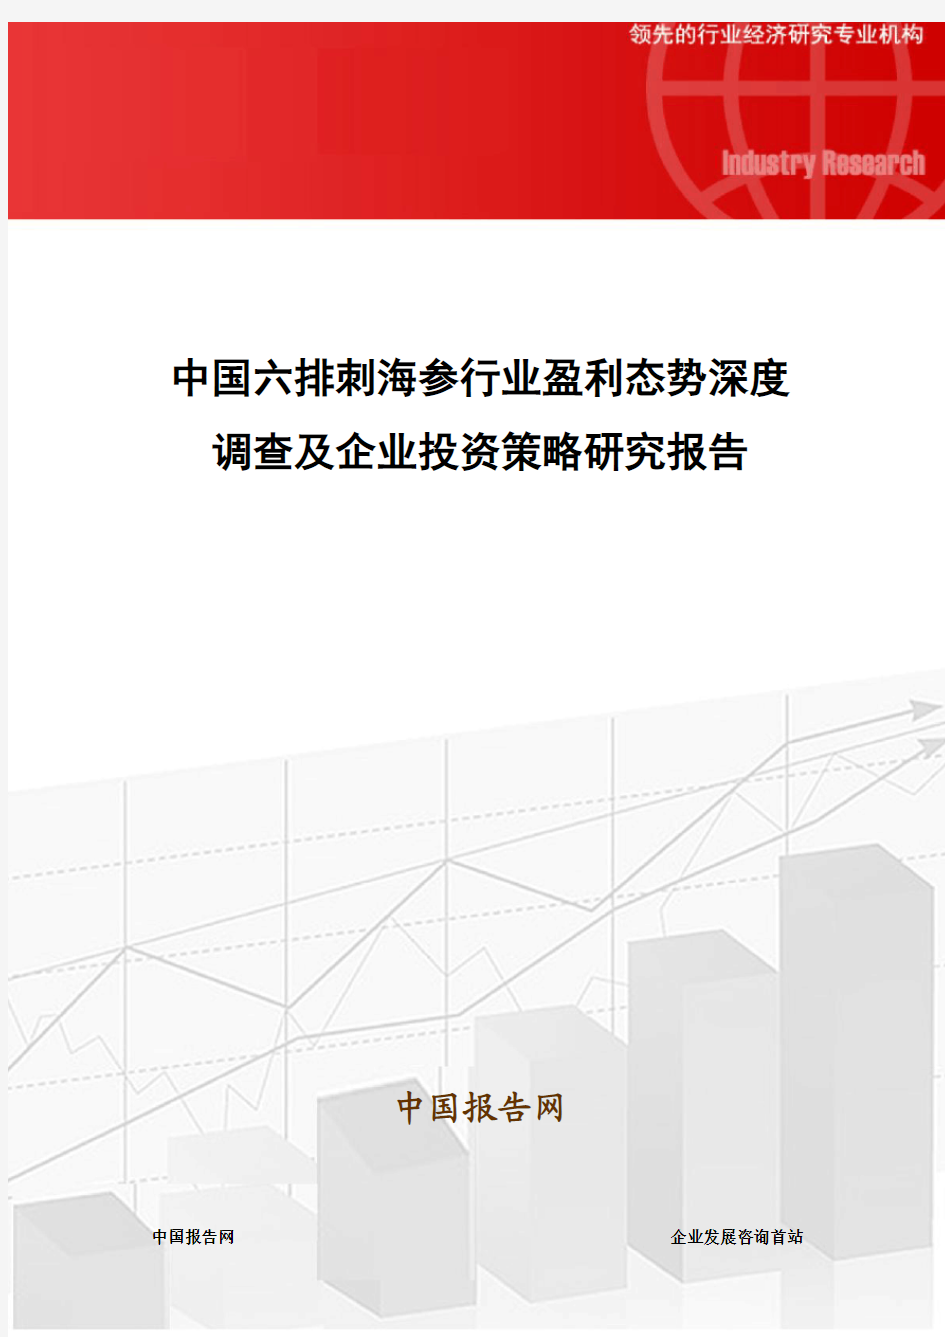 中国六排刺海参行业盈利态势深度调查及企业投资策略研究报告